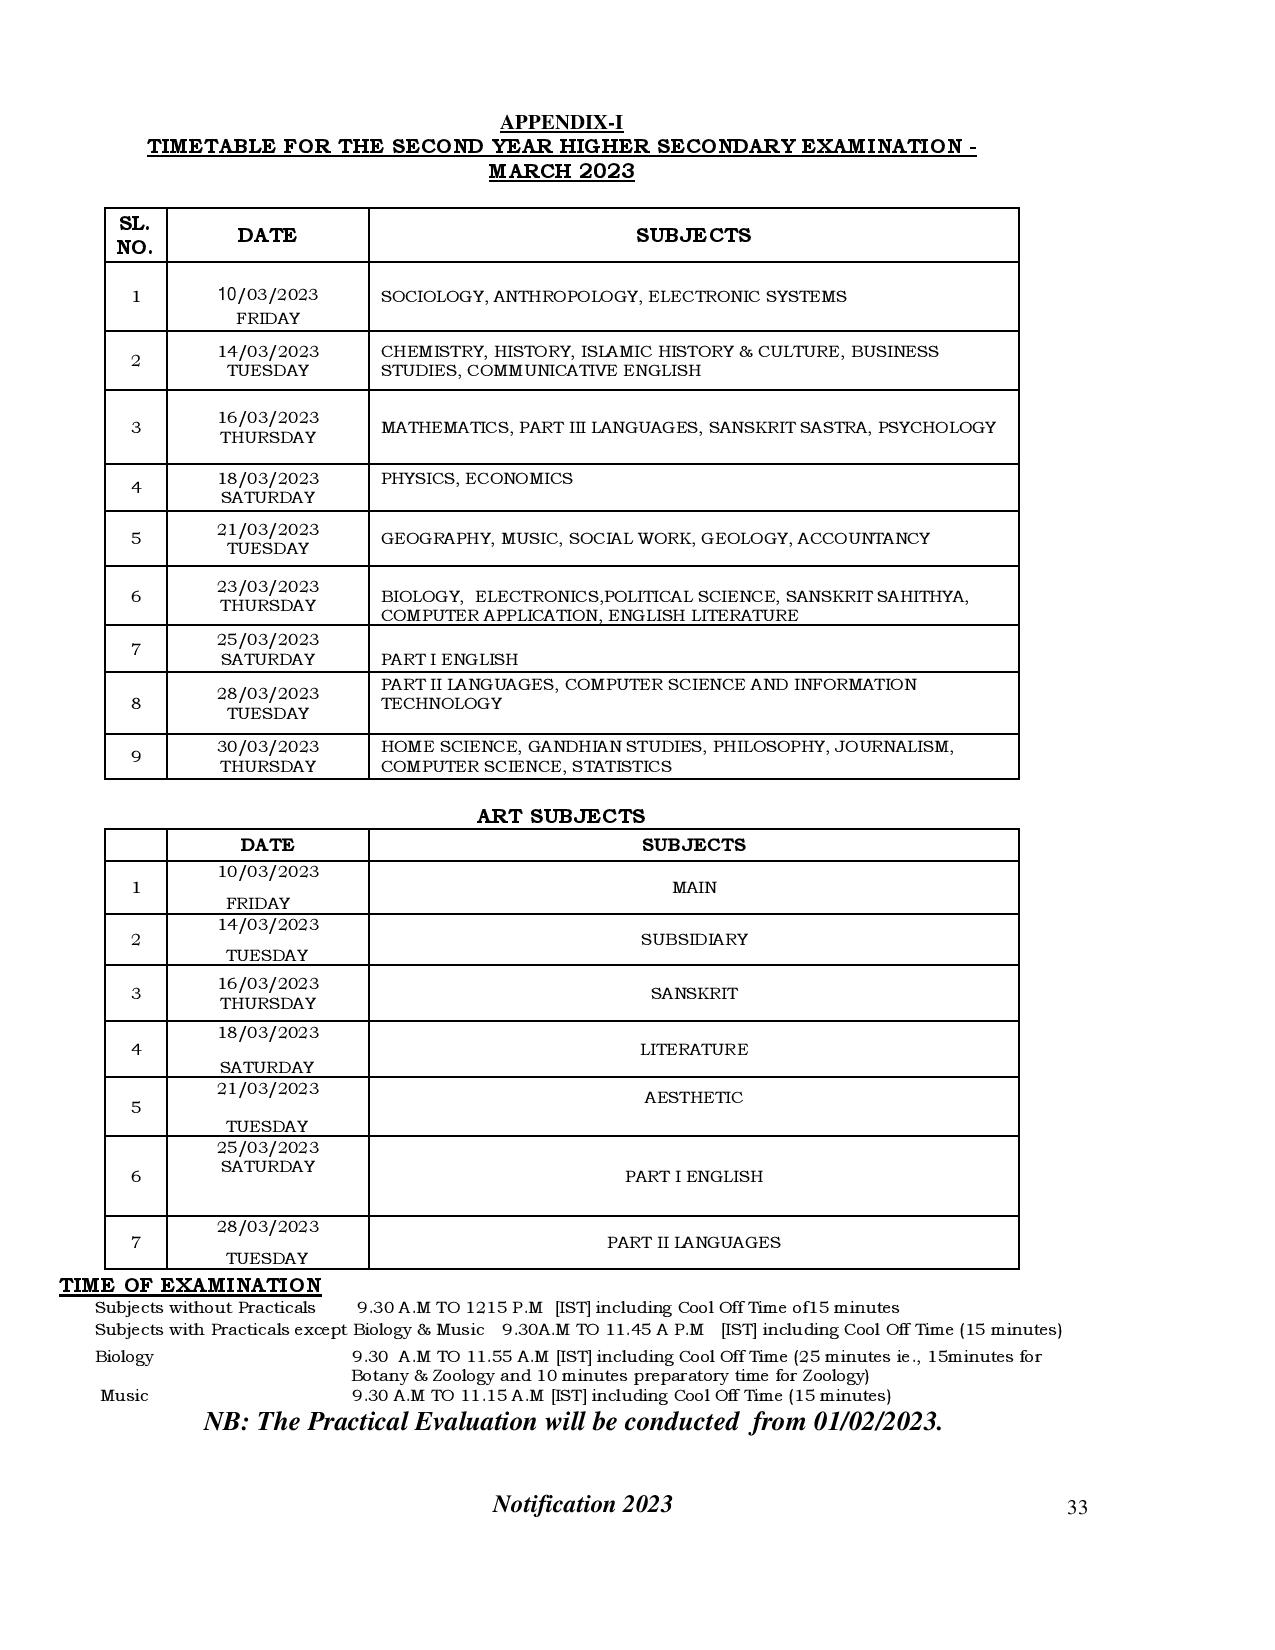 Kerala DHSE/HSE Exam Schedule 2023